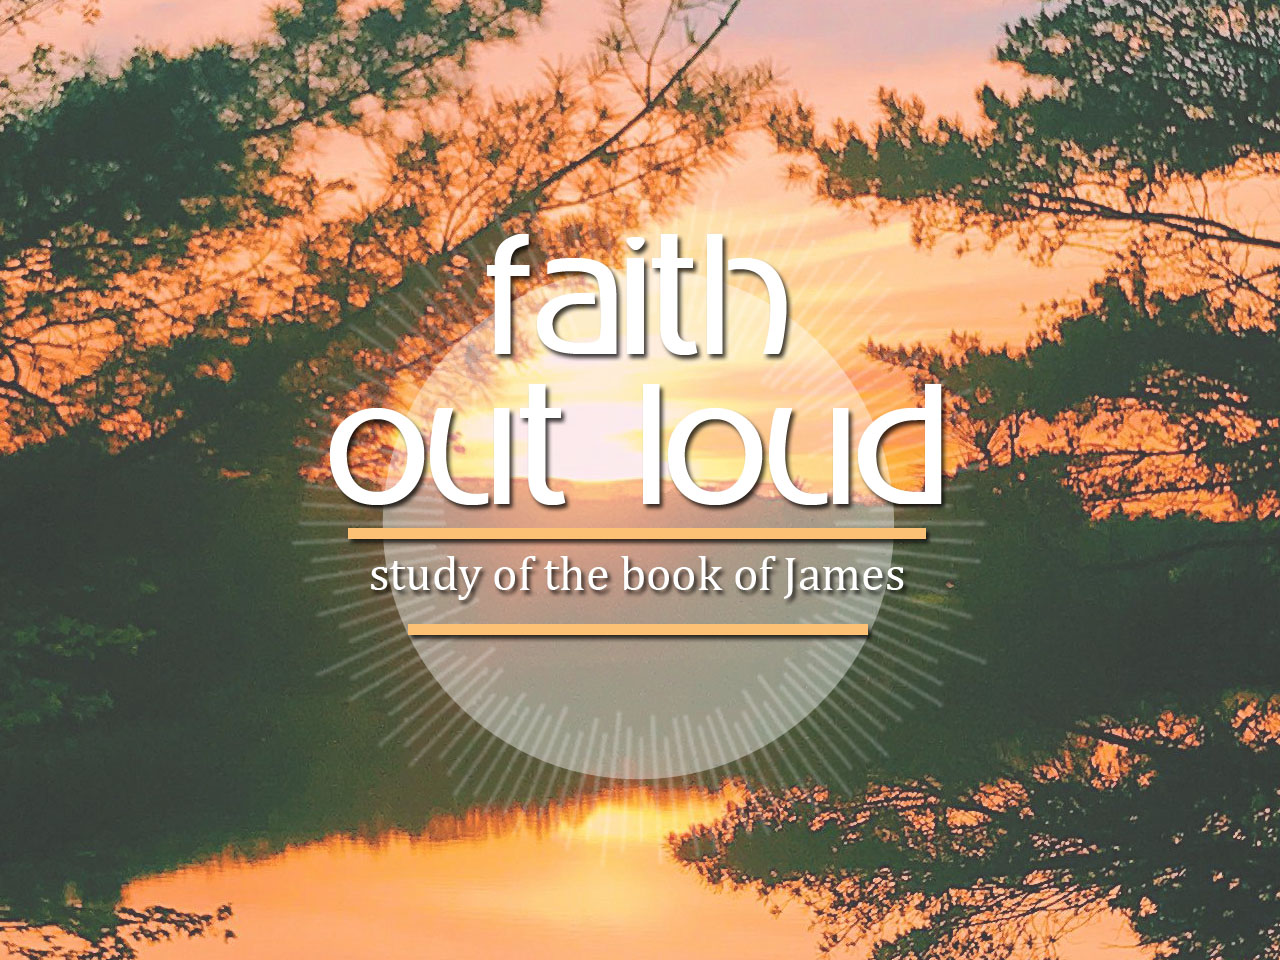 Faith Out Loud